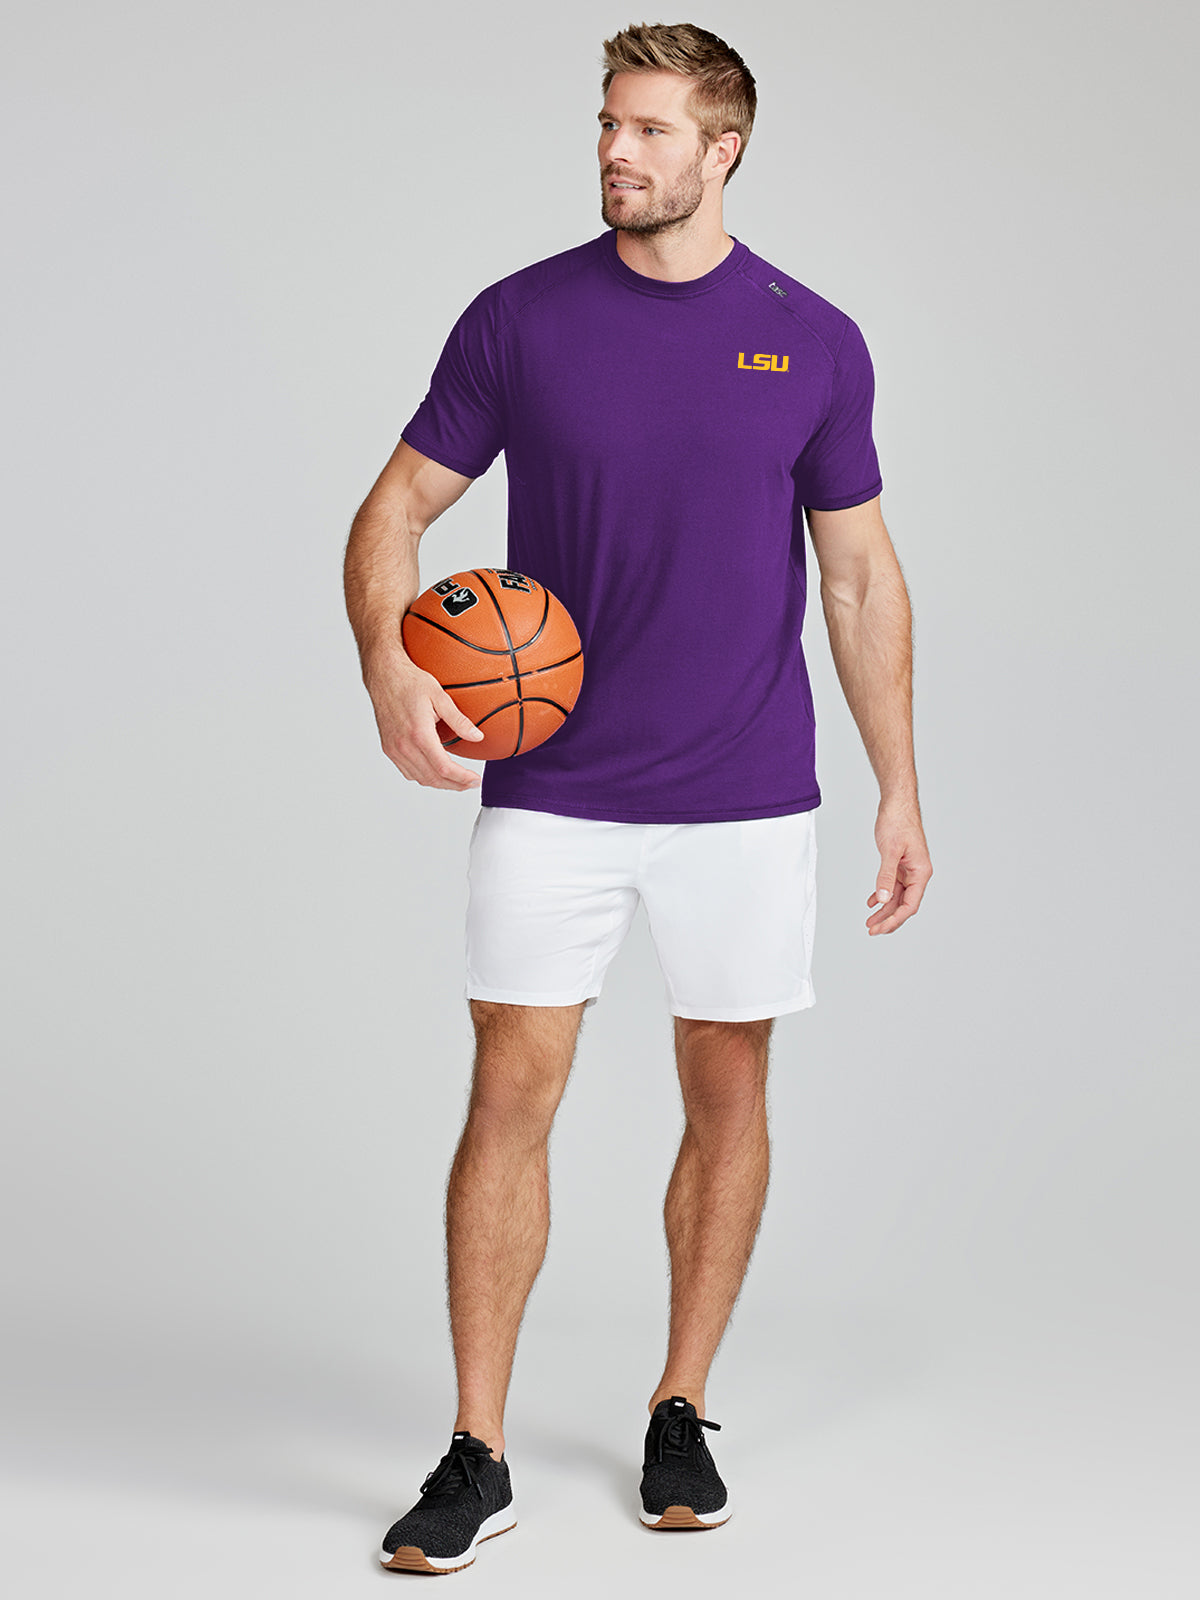 Carrollton Fitness T-Shirt - LSU - tasc Performance (PurpleC)